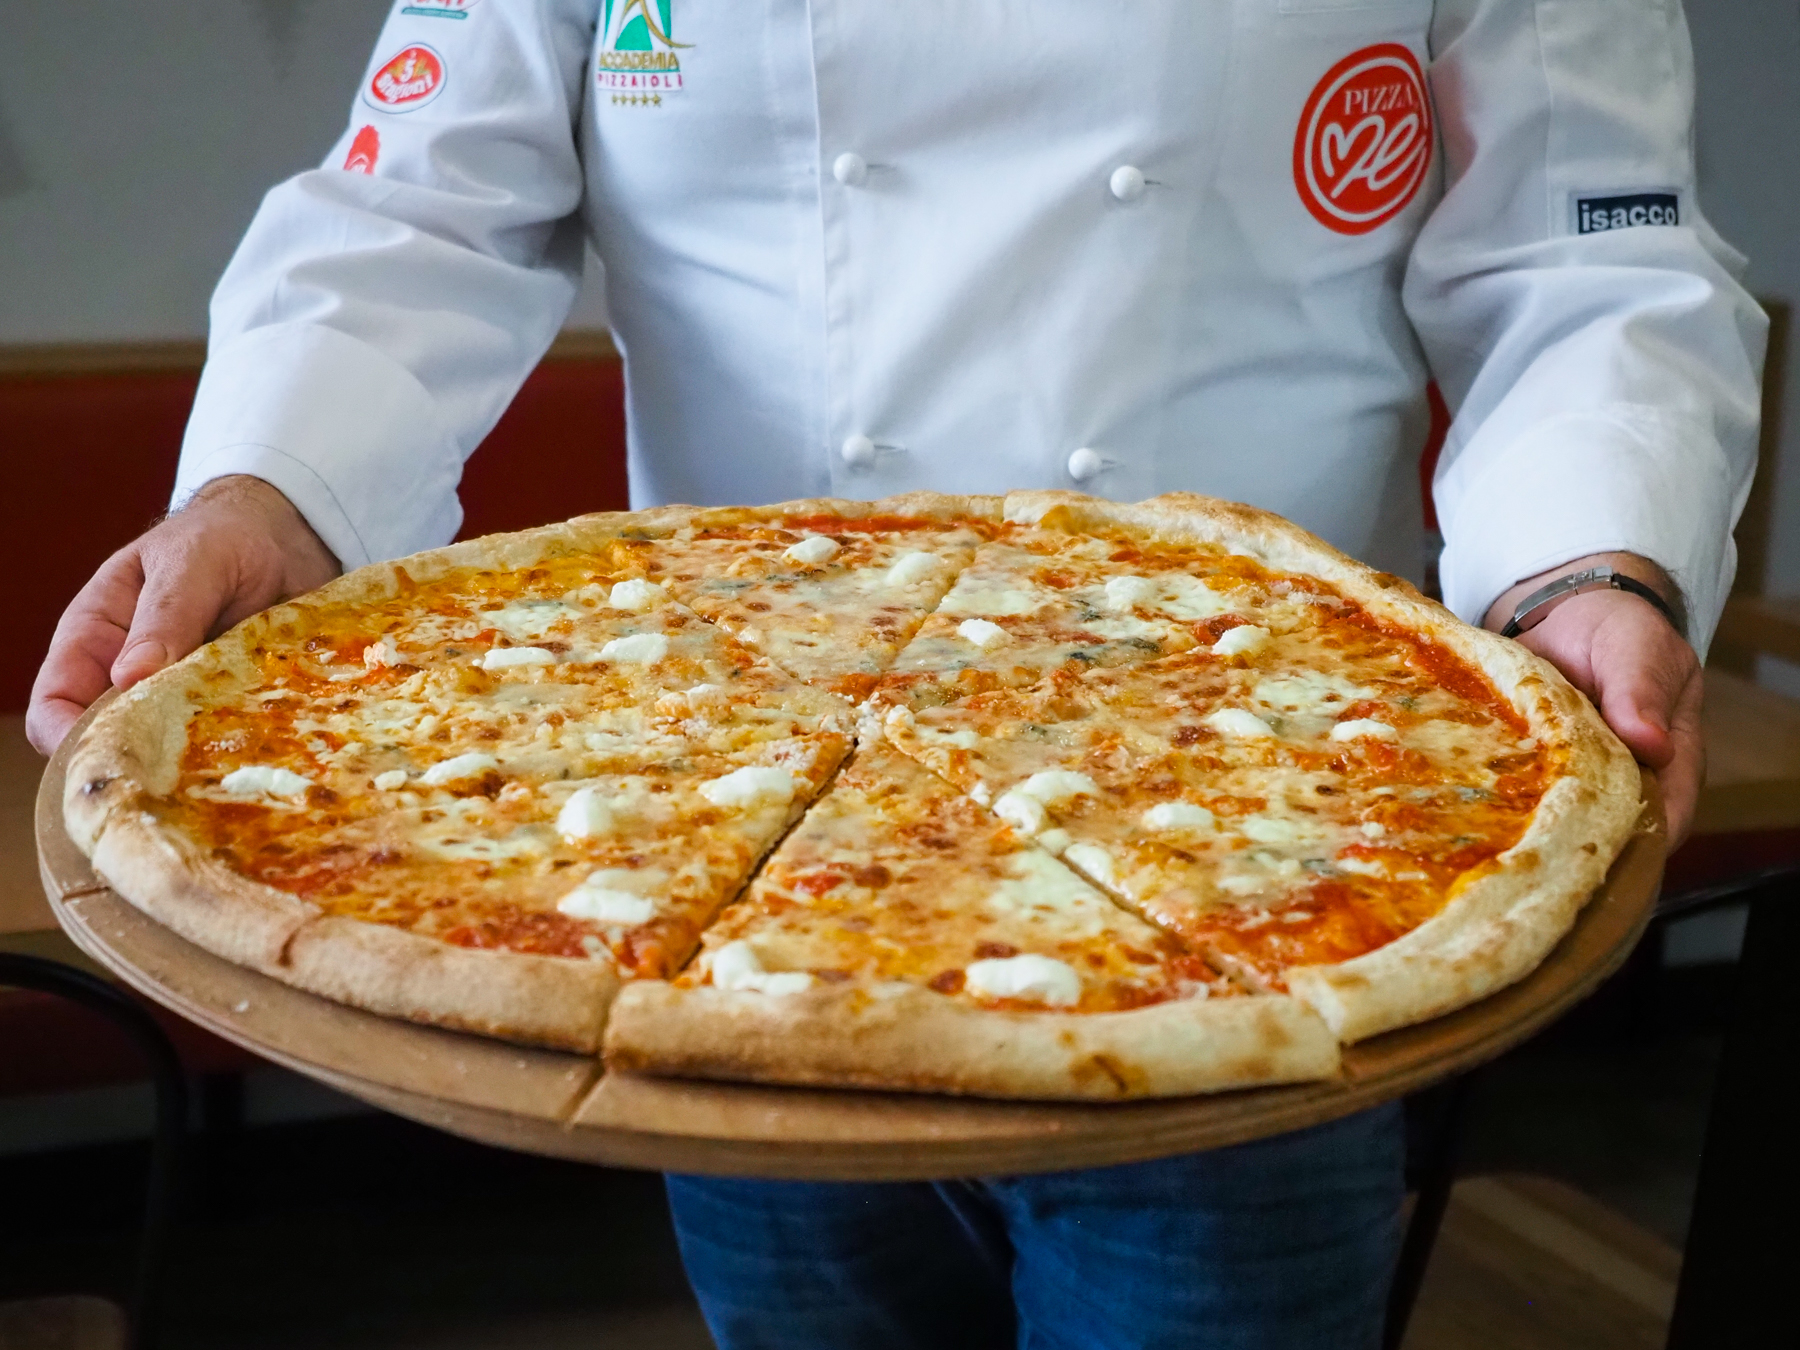 Ha a négysajtos pizzát szereted, ezt egyenes imádni fogod! - megnéztük, hogy hogyan készül a Pizza Me havi ajánlata